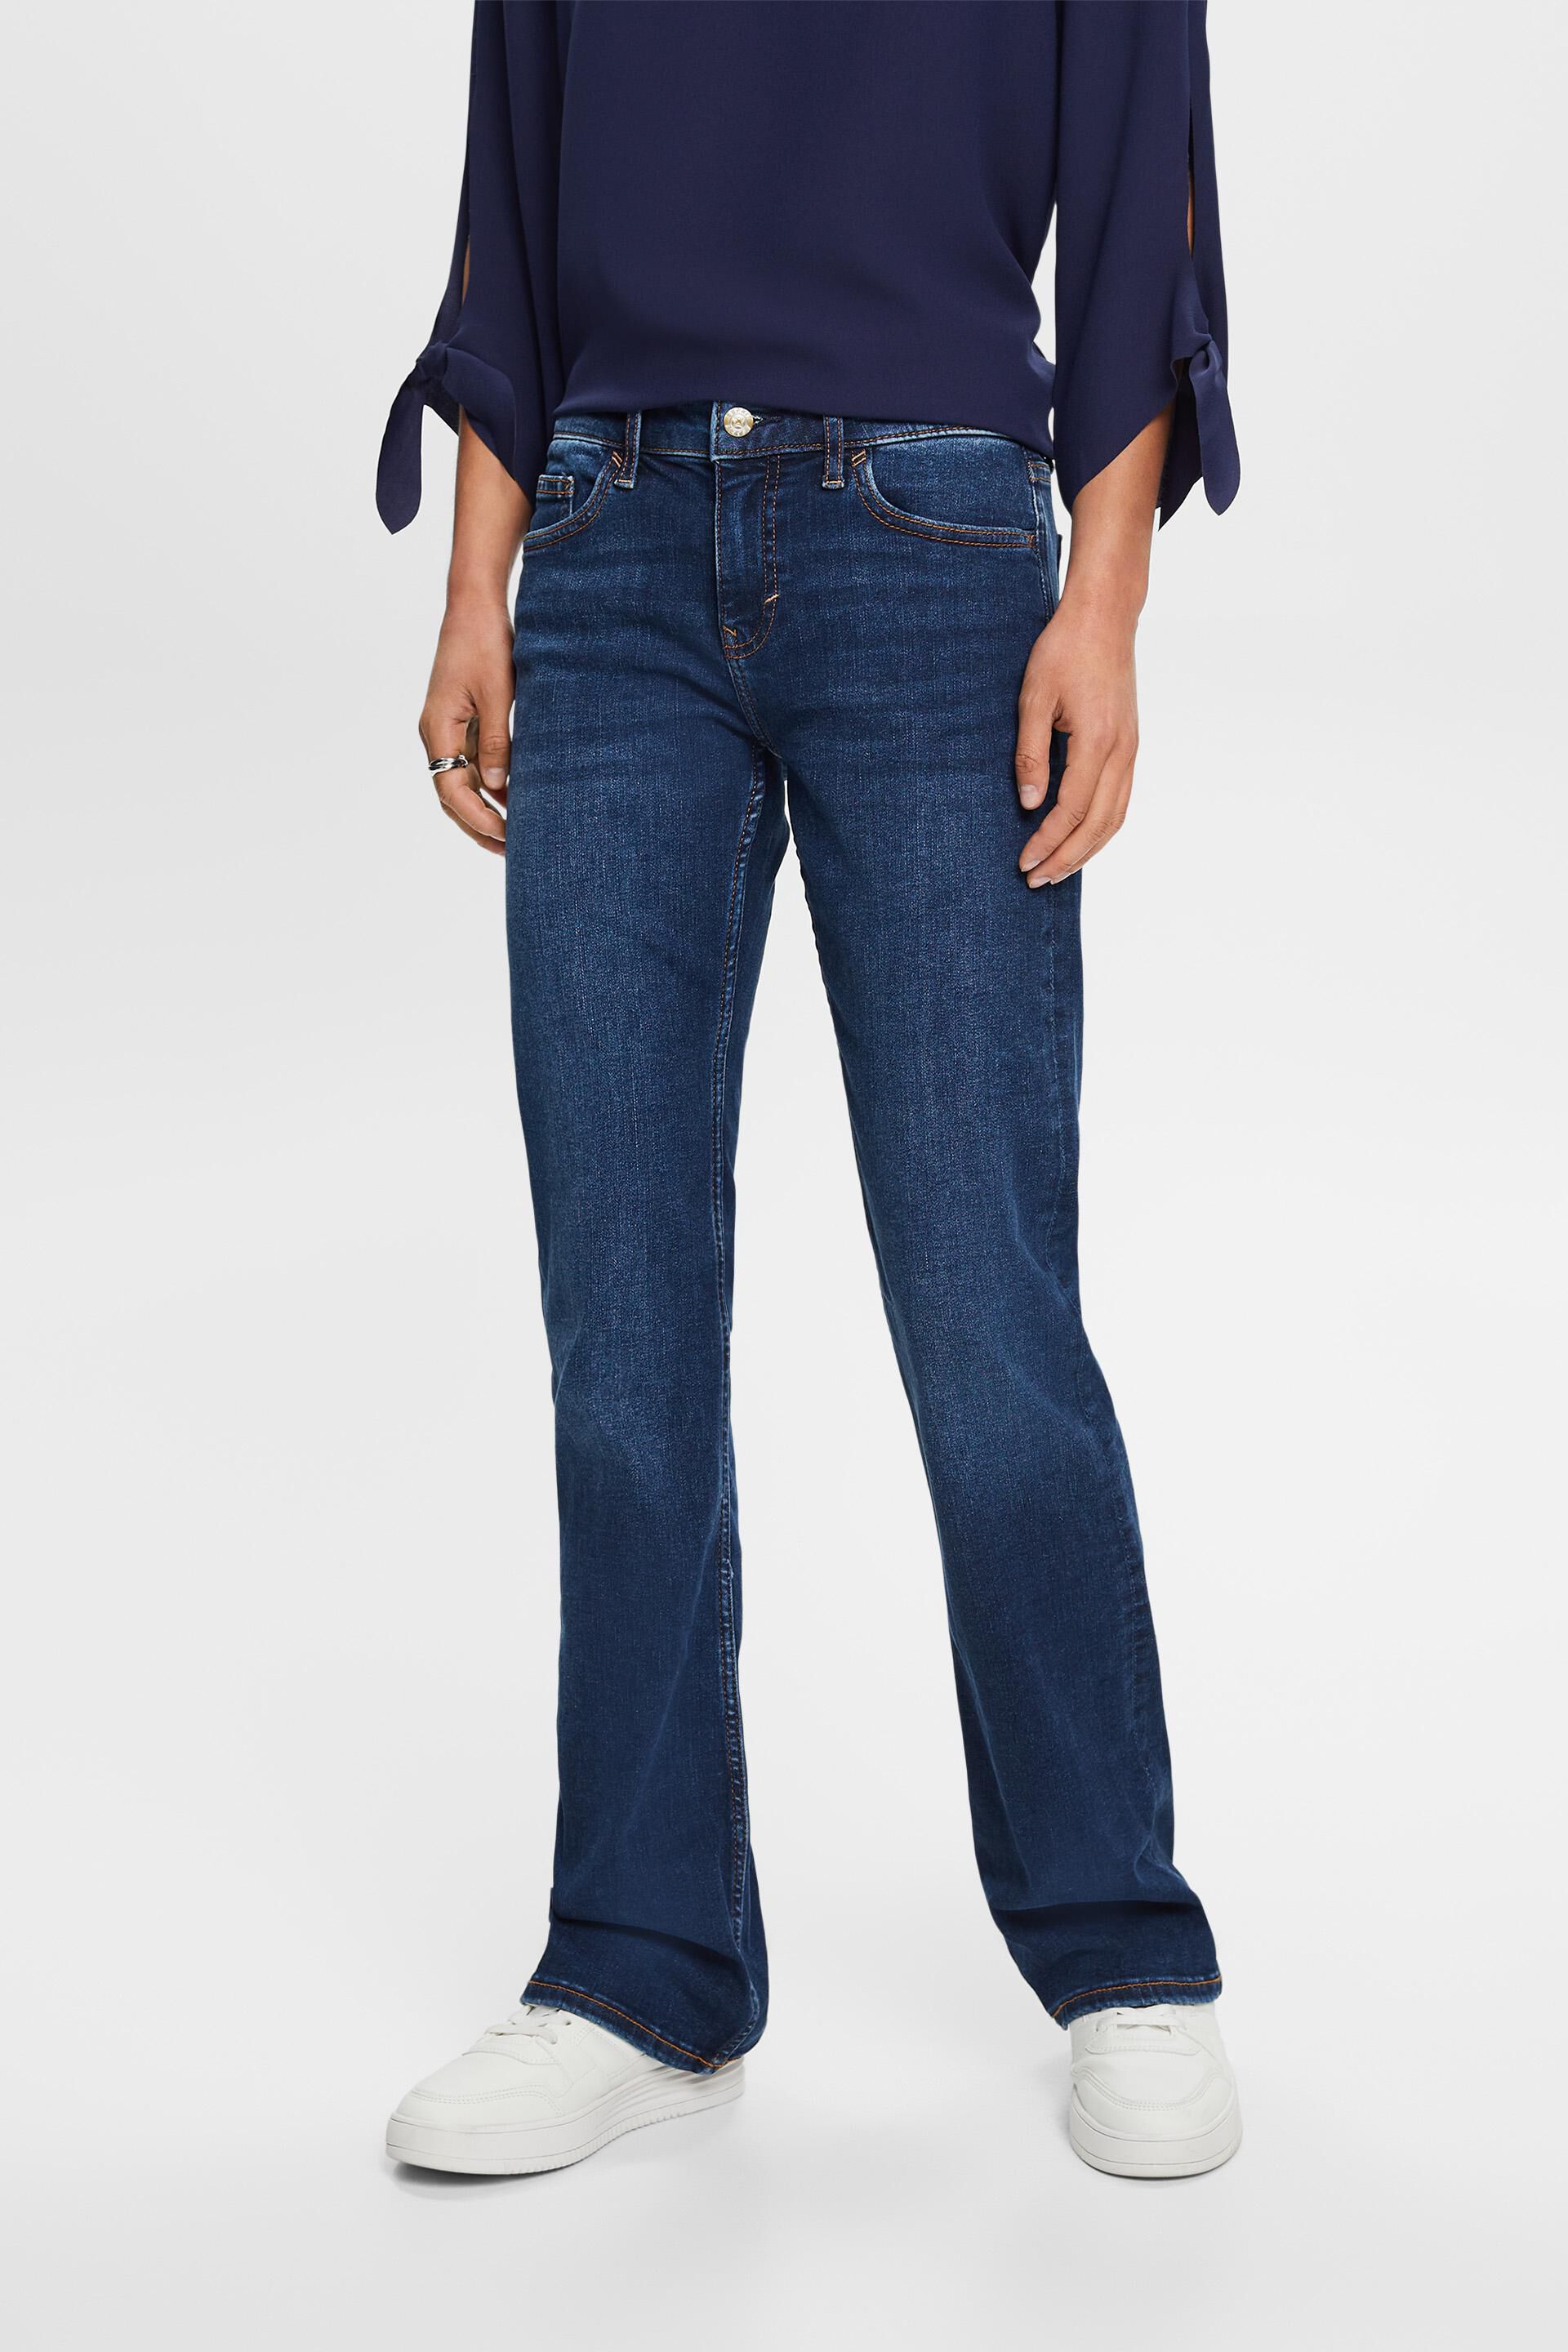 Esprit bootcut Mid-rise jeans